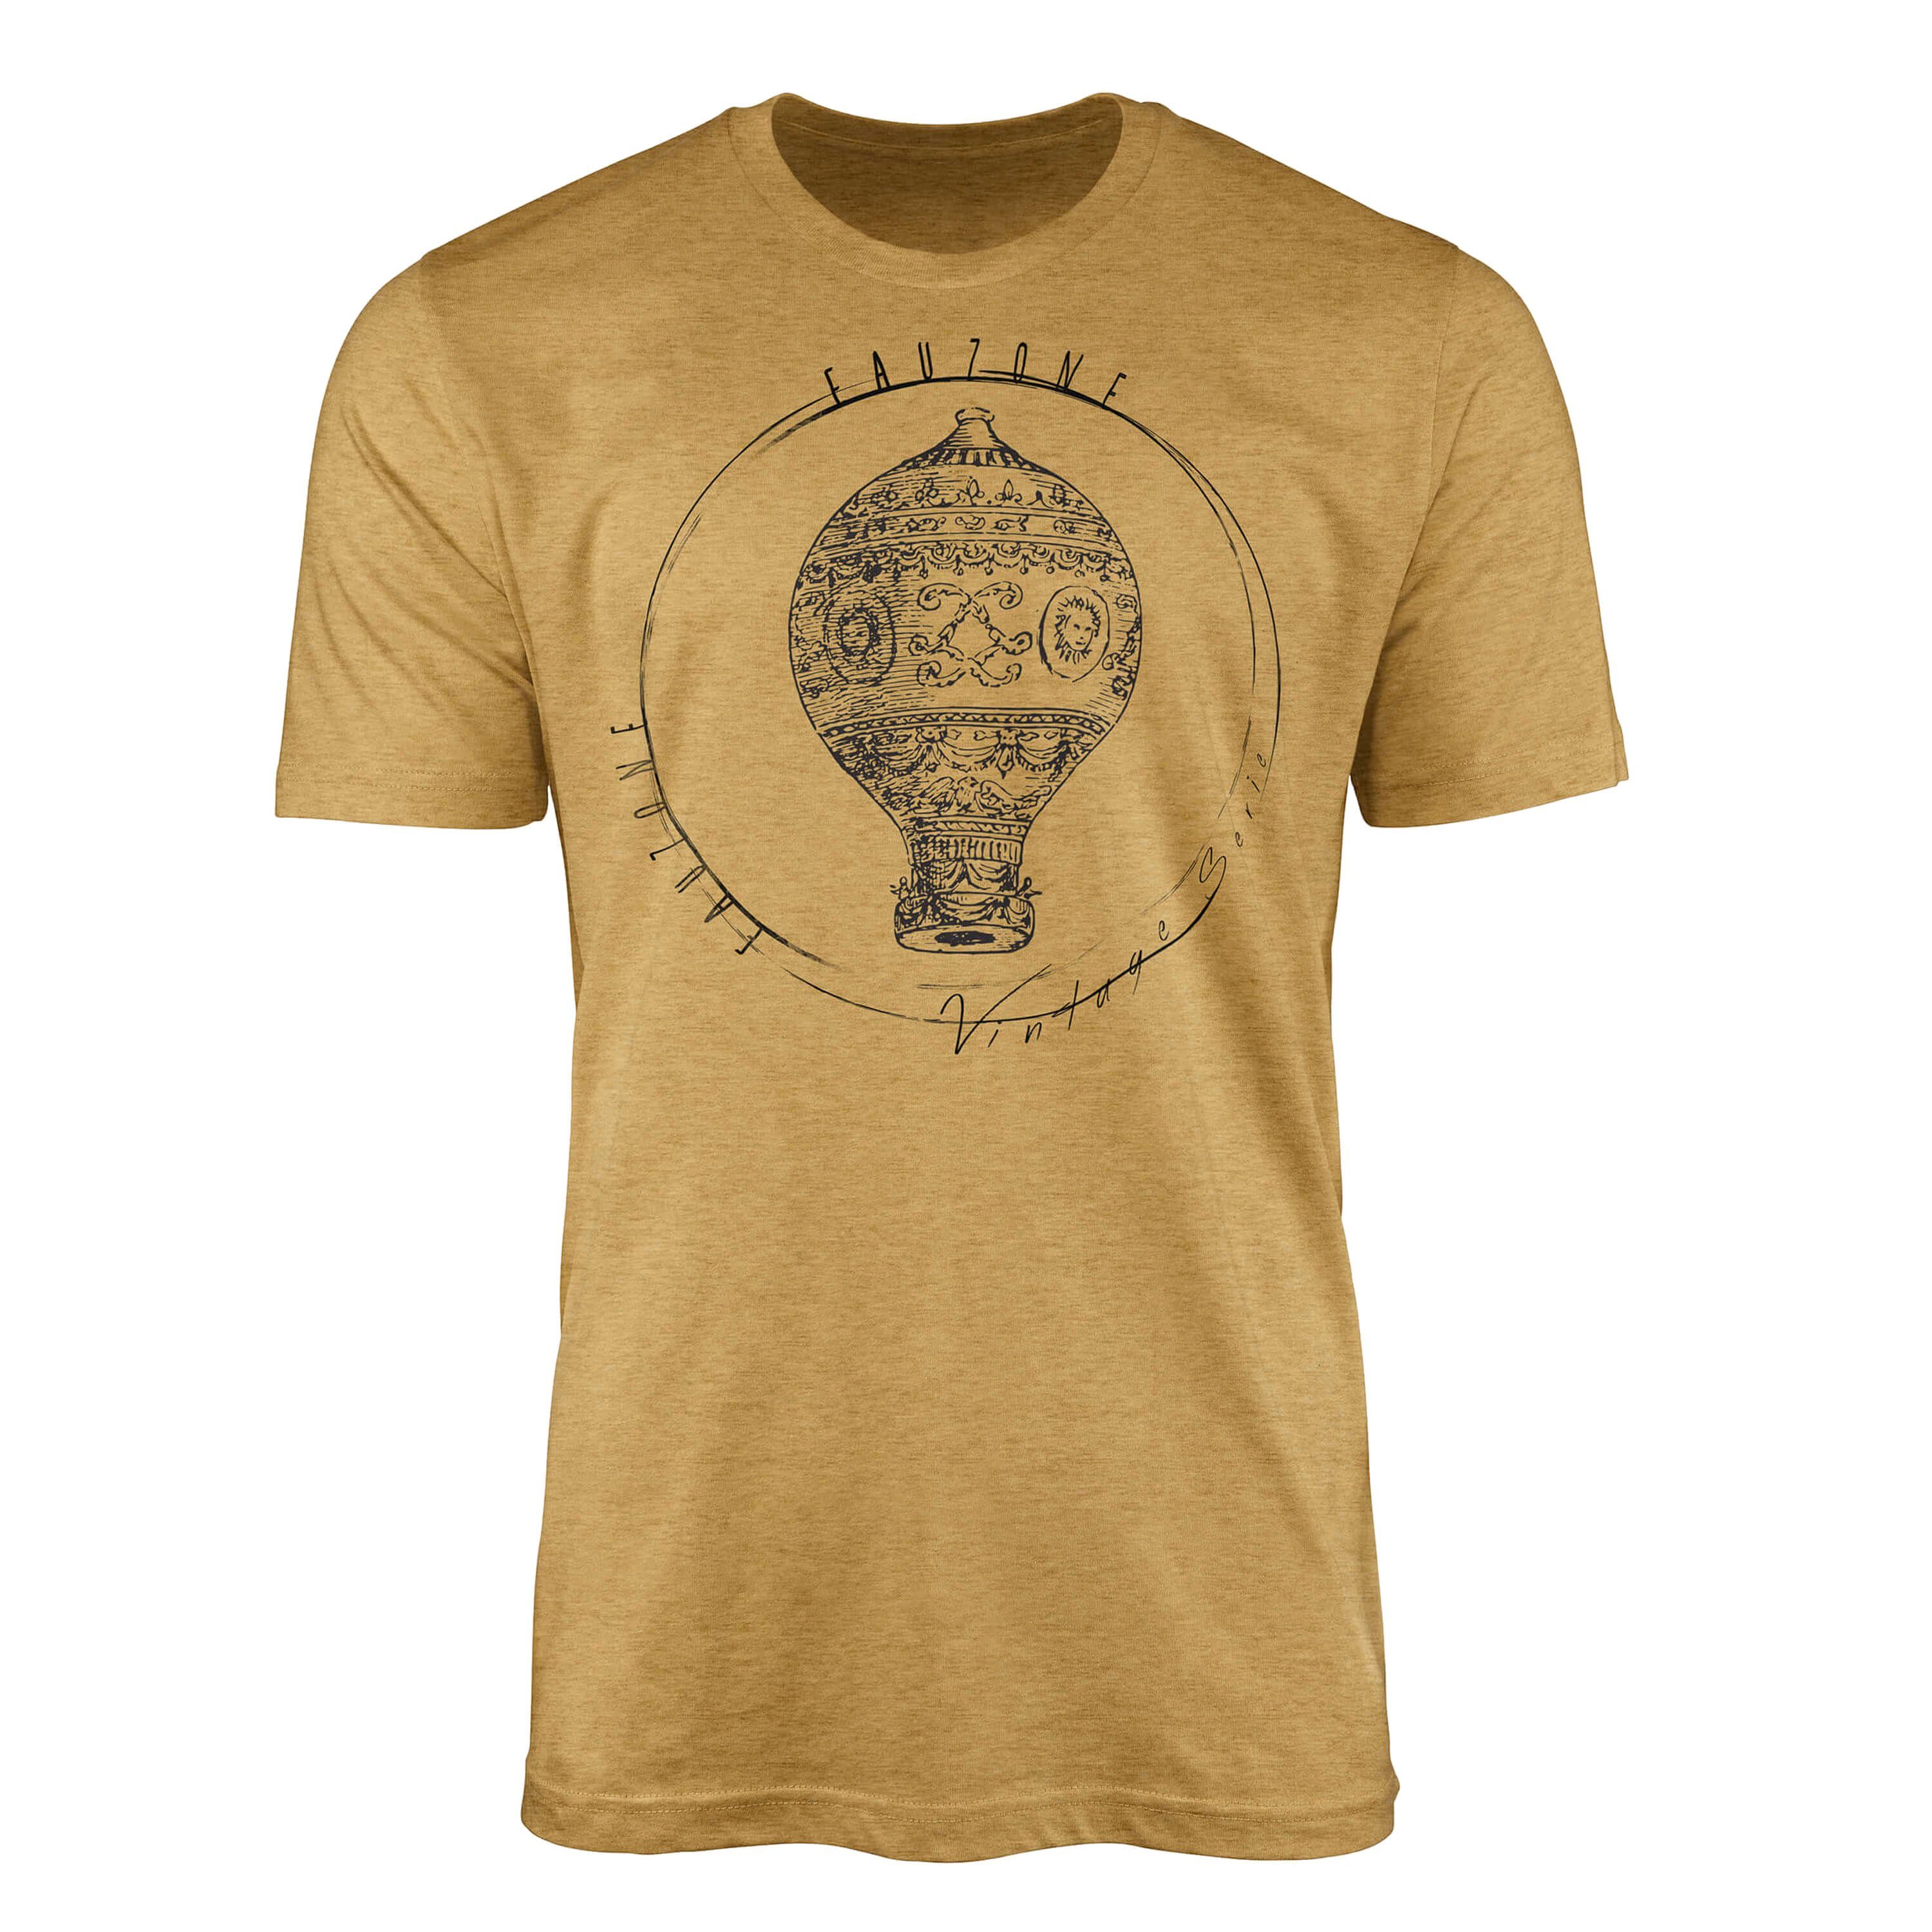 Sinus Art T-Shirt Vintage Herren Heizluftballon Antique Gold T-Shirt